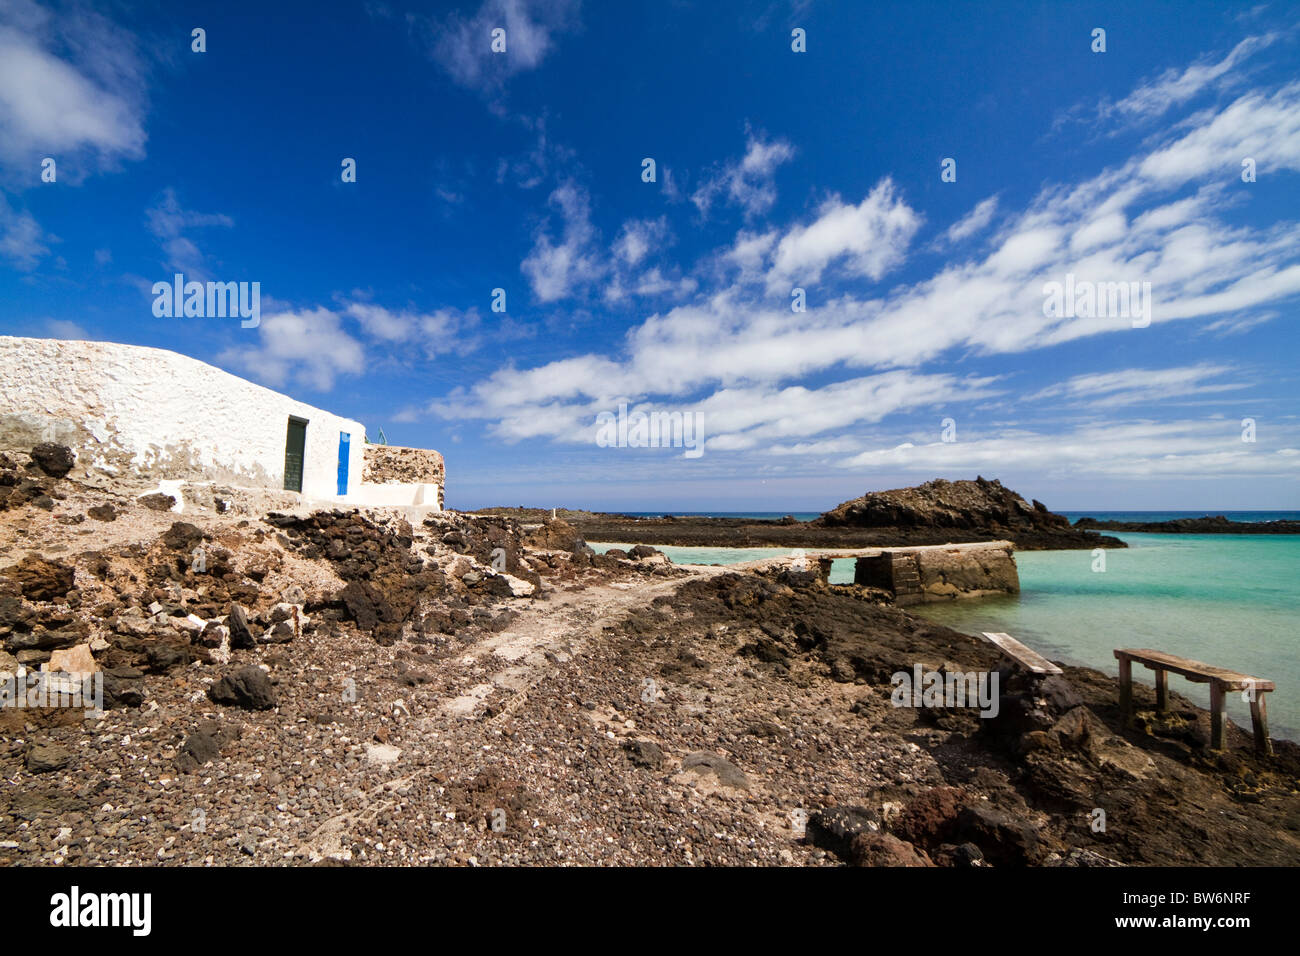 Islote de Lobos. L'île de Lobos. Eau bleu clair dans cette petite île au large de Fuerteventura. Îles Canaries. Espagne Banque D'Images